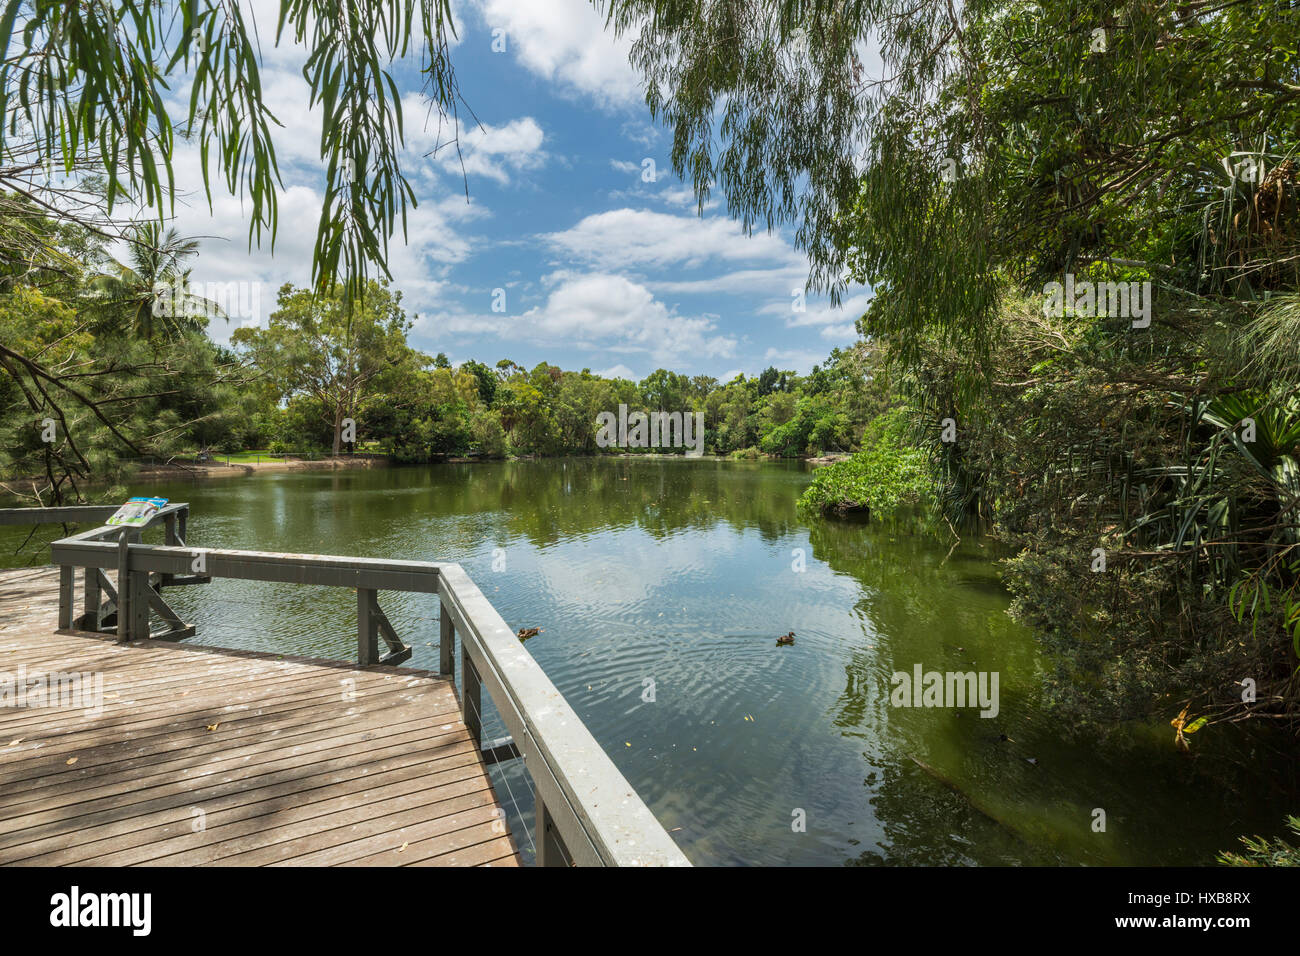 Promenade surplombant un lac dans les jardins botaniques, Bundaberg Bundaberg, Queensland, Australie Banque D'Images